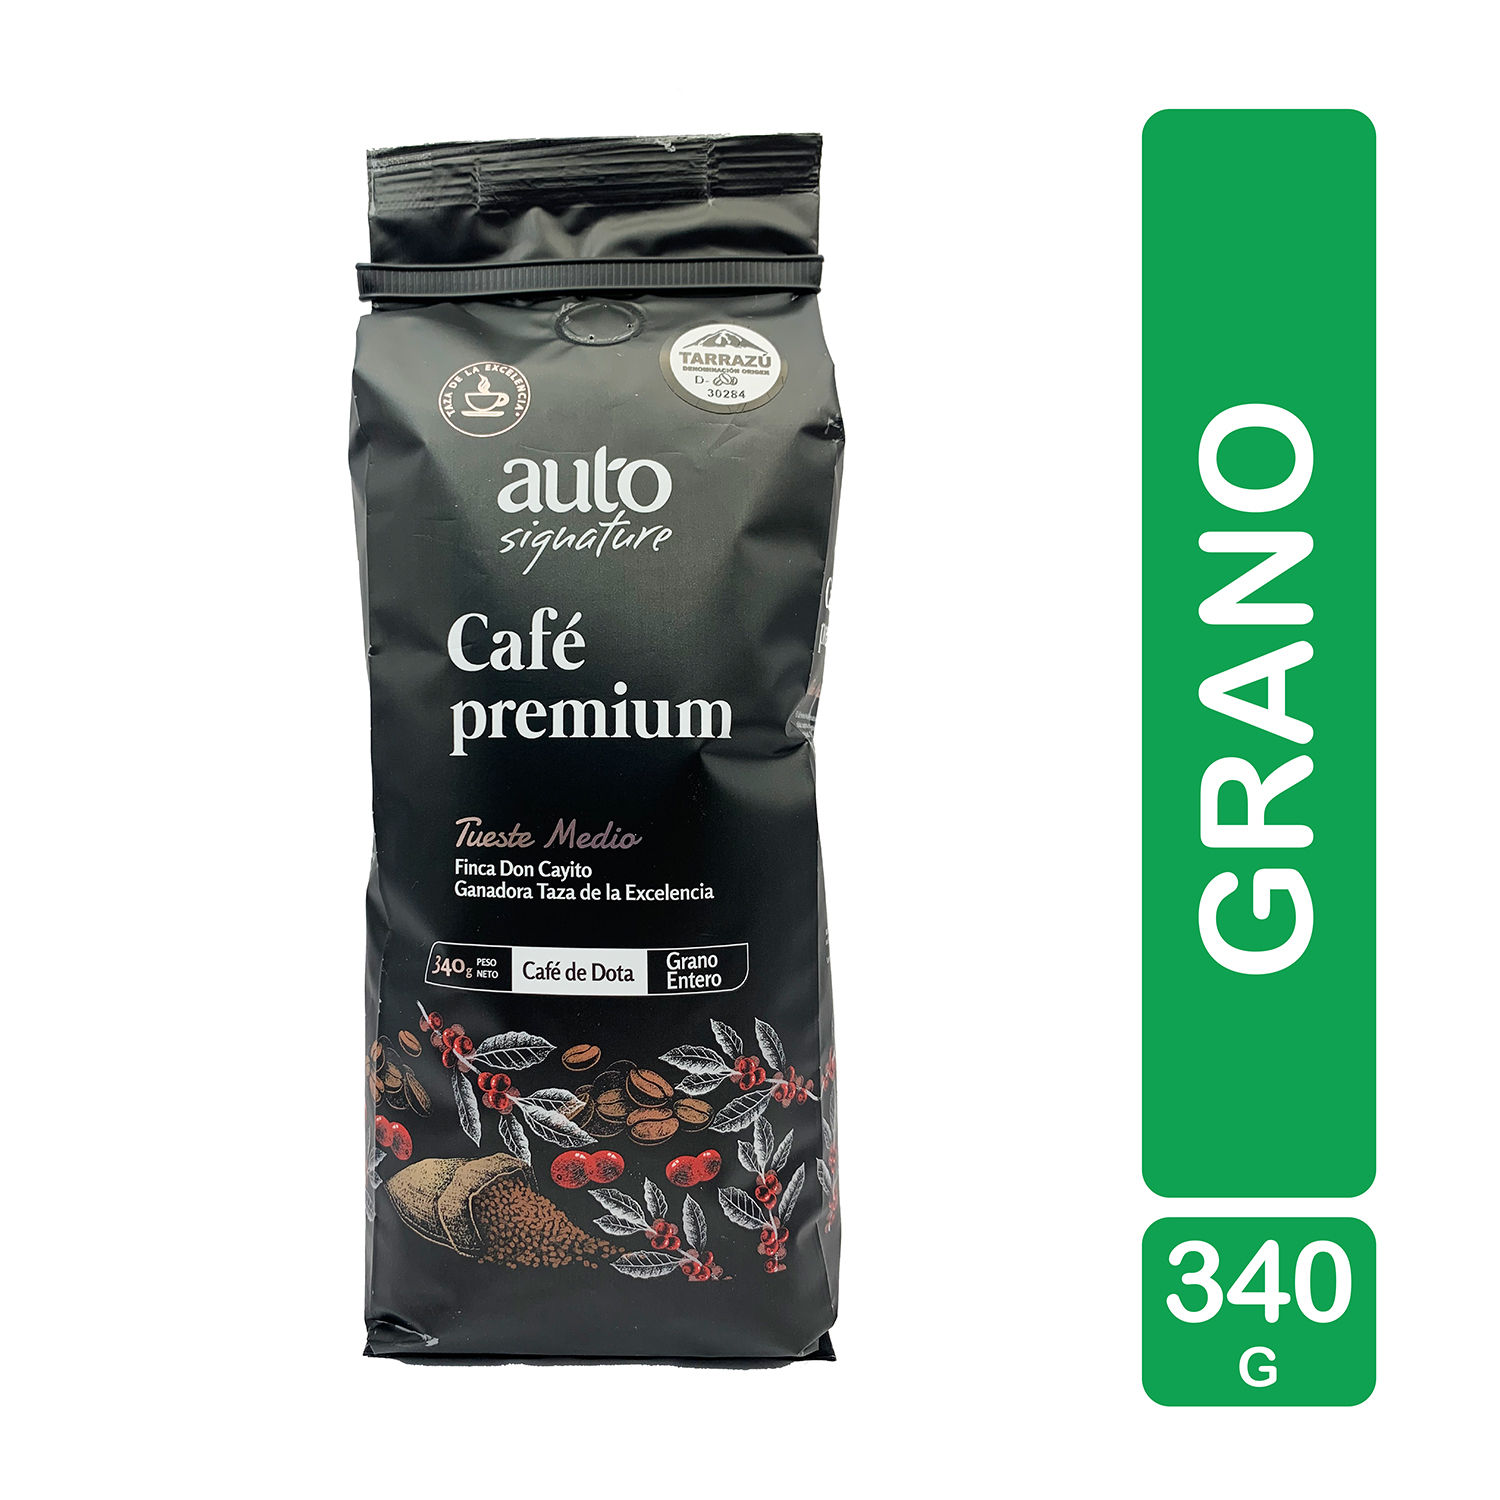 Café Grano Entero Premium Tueste Medio Auto Signature Paquete 340 G